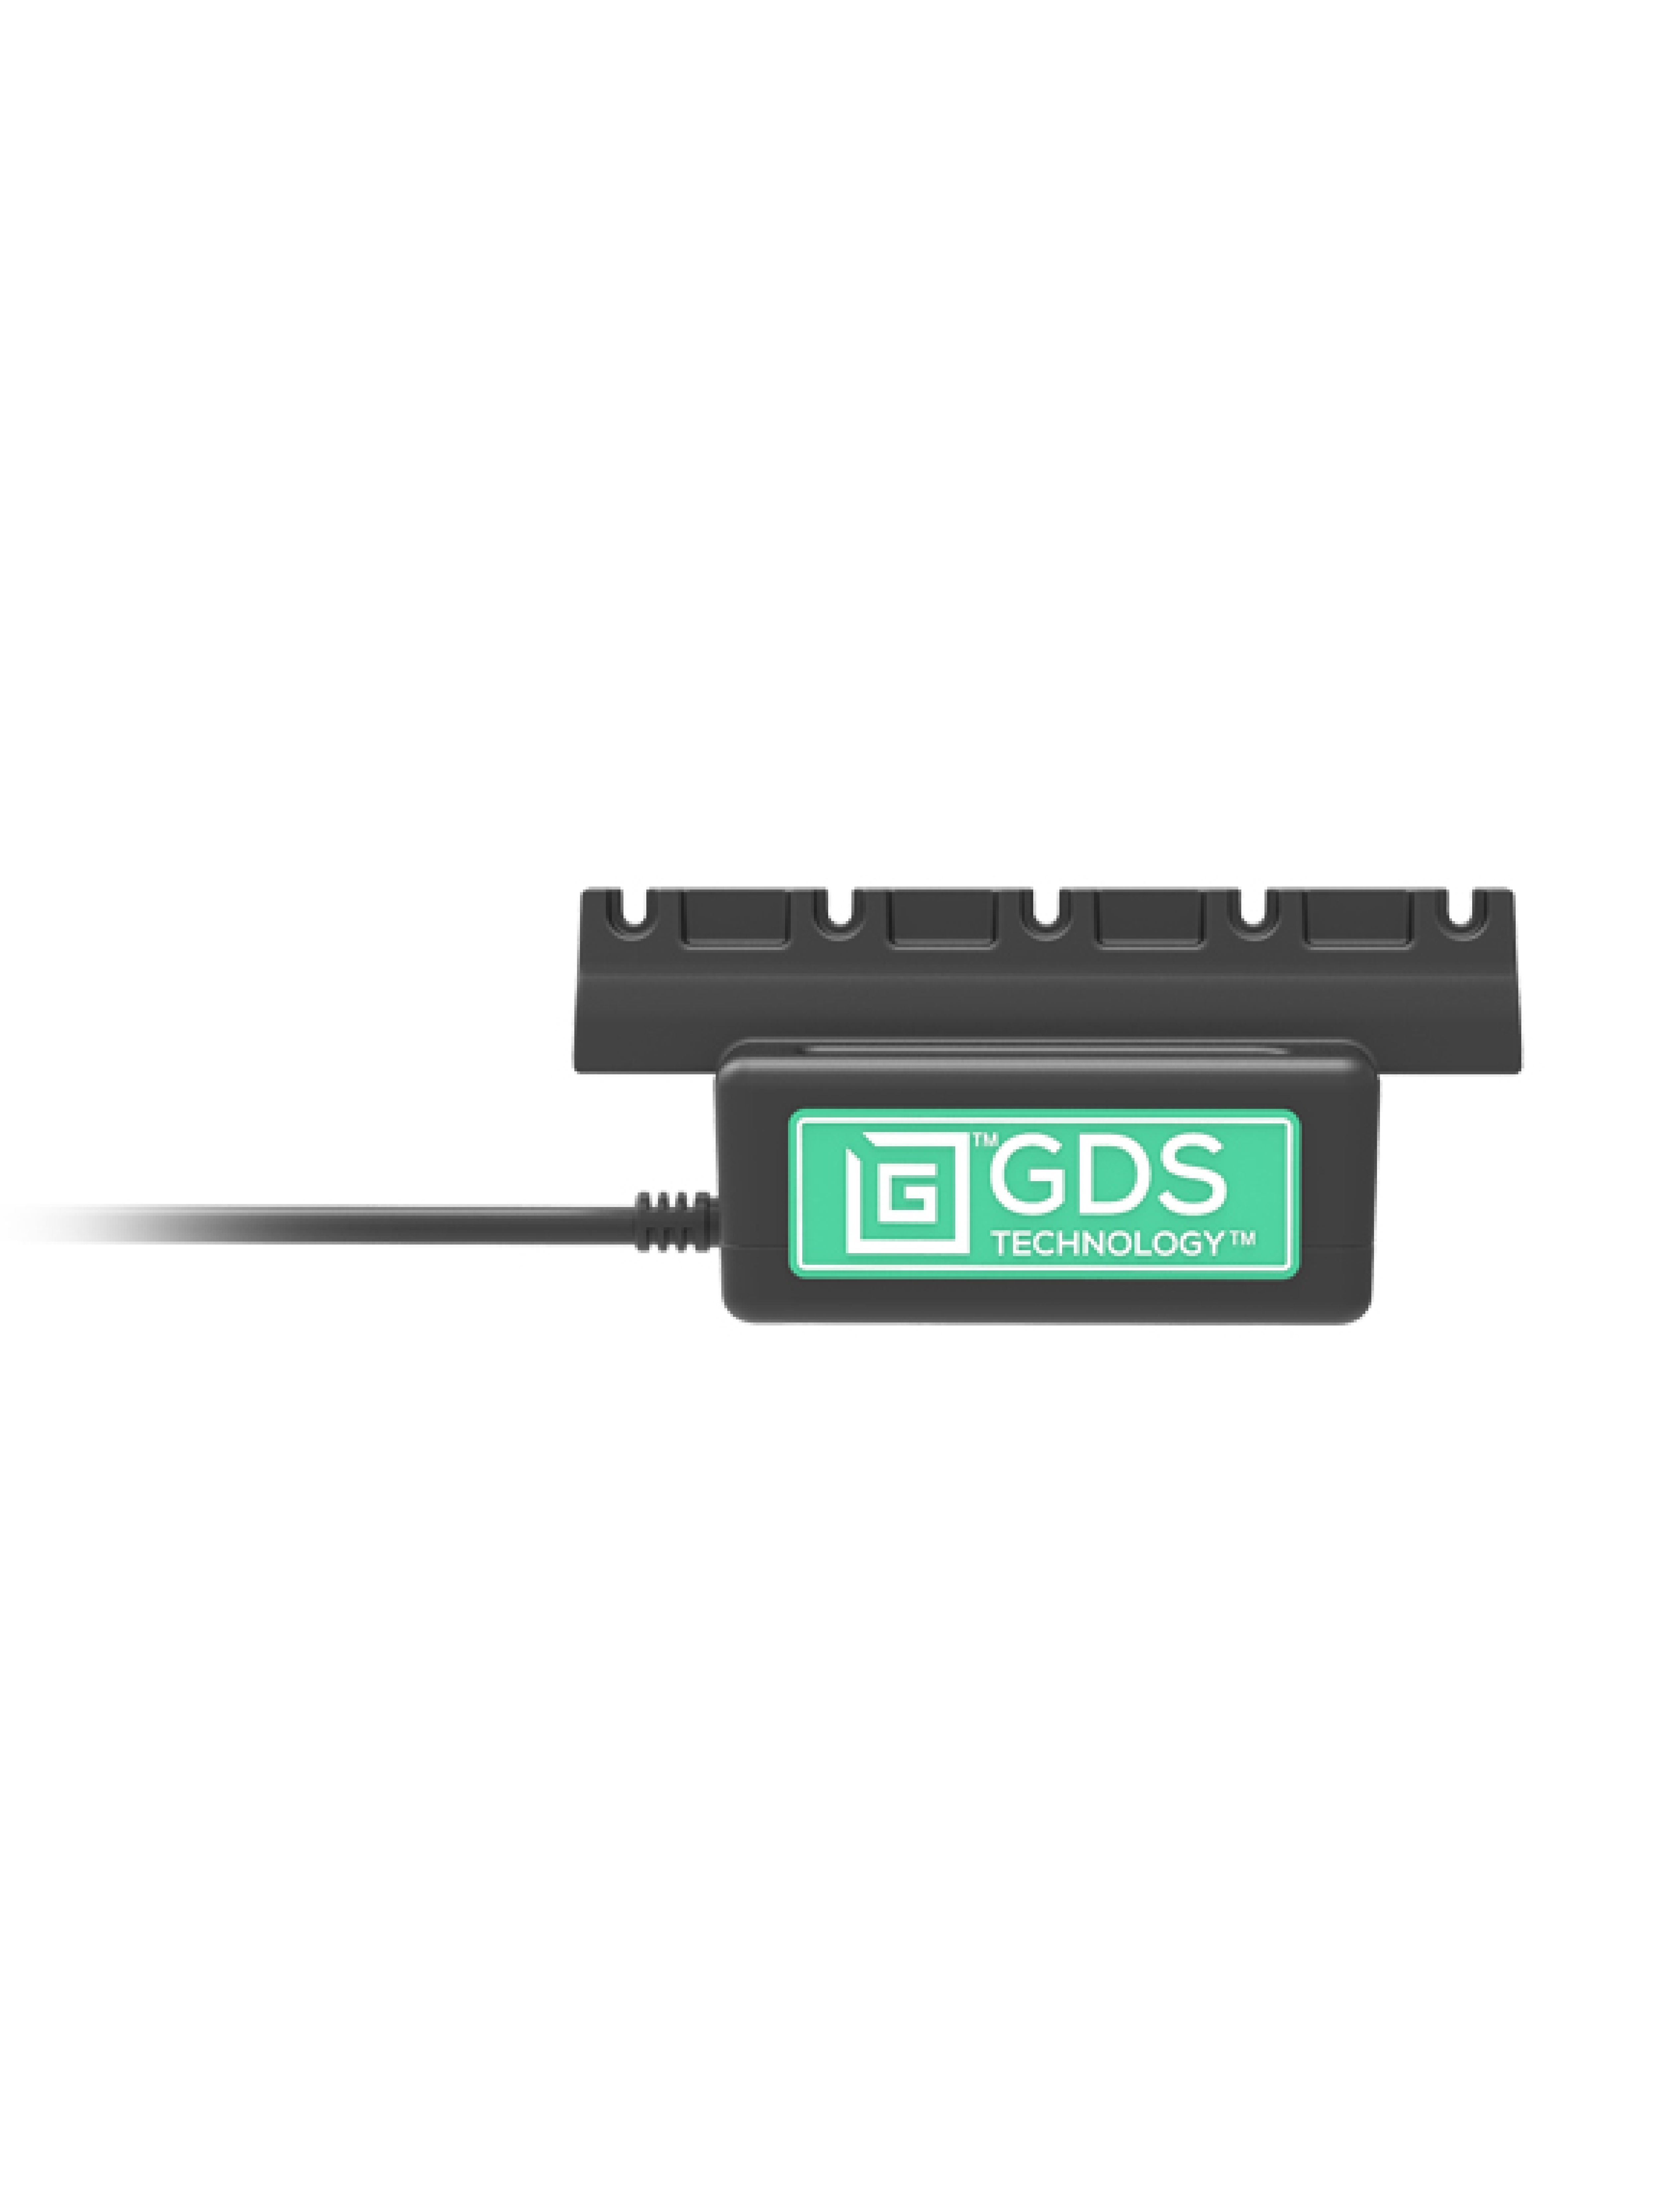 RAM Mounts GDS Lade-Sockel Next Generation IntelliSkin Ladeschutzhüllen - USB-C Anschluss